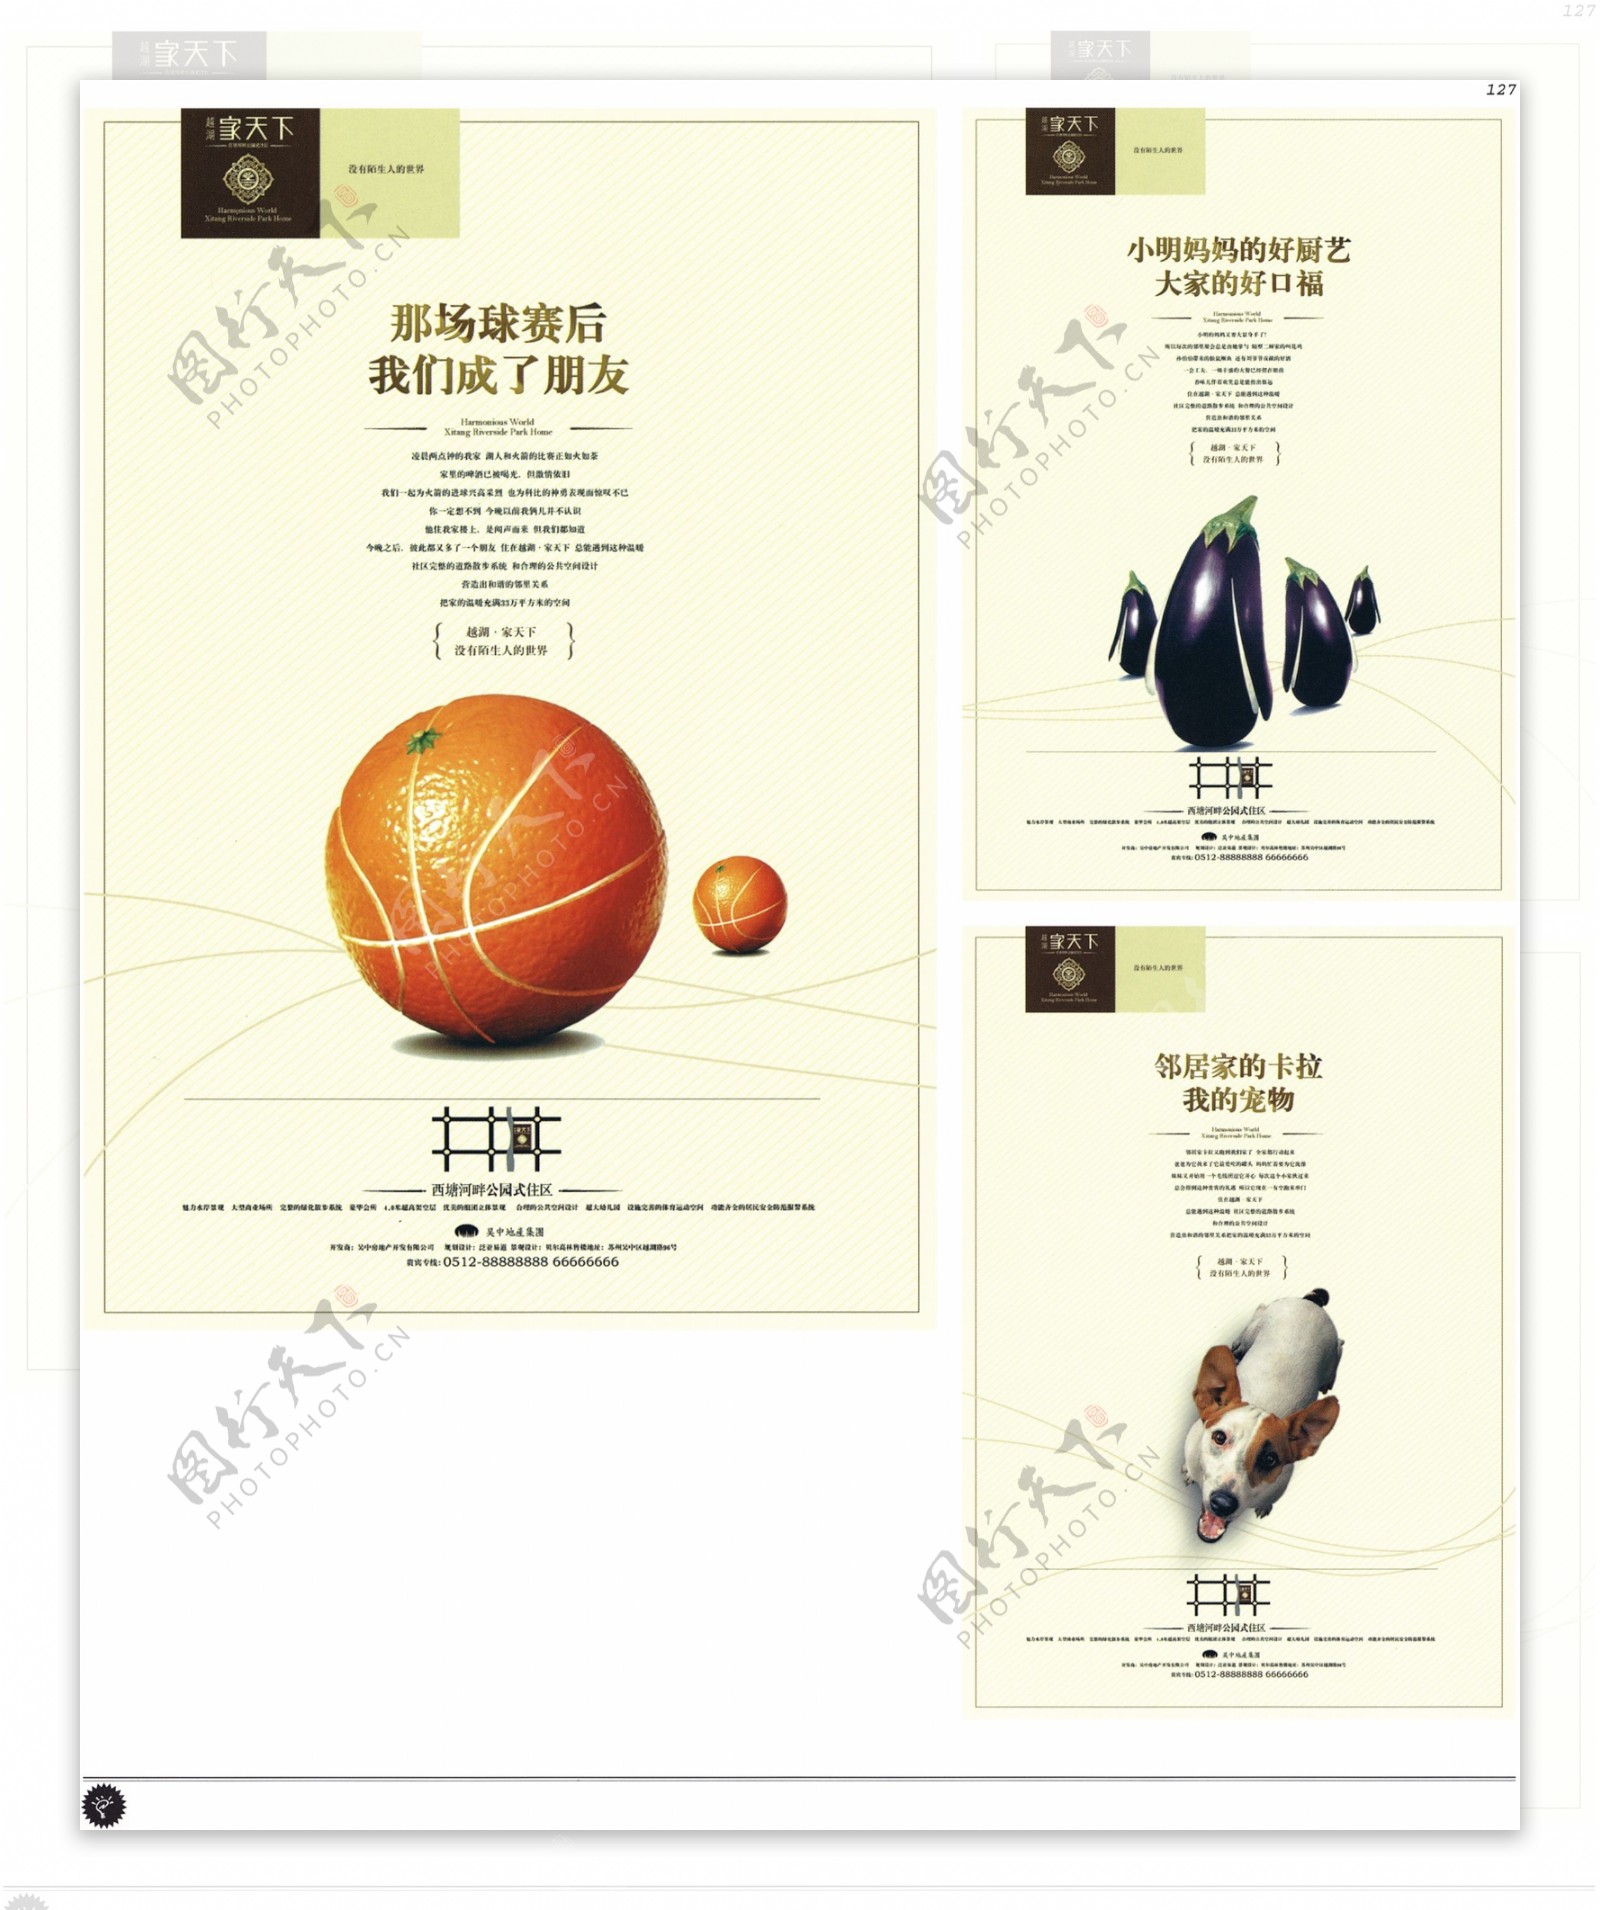 中国房地产广告年鉴第一册创意设计0123